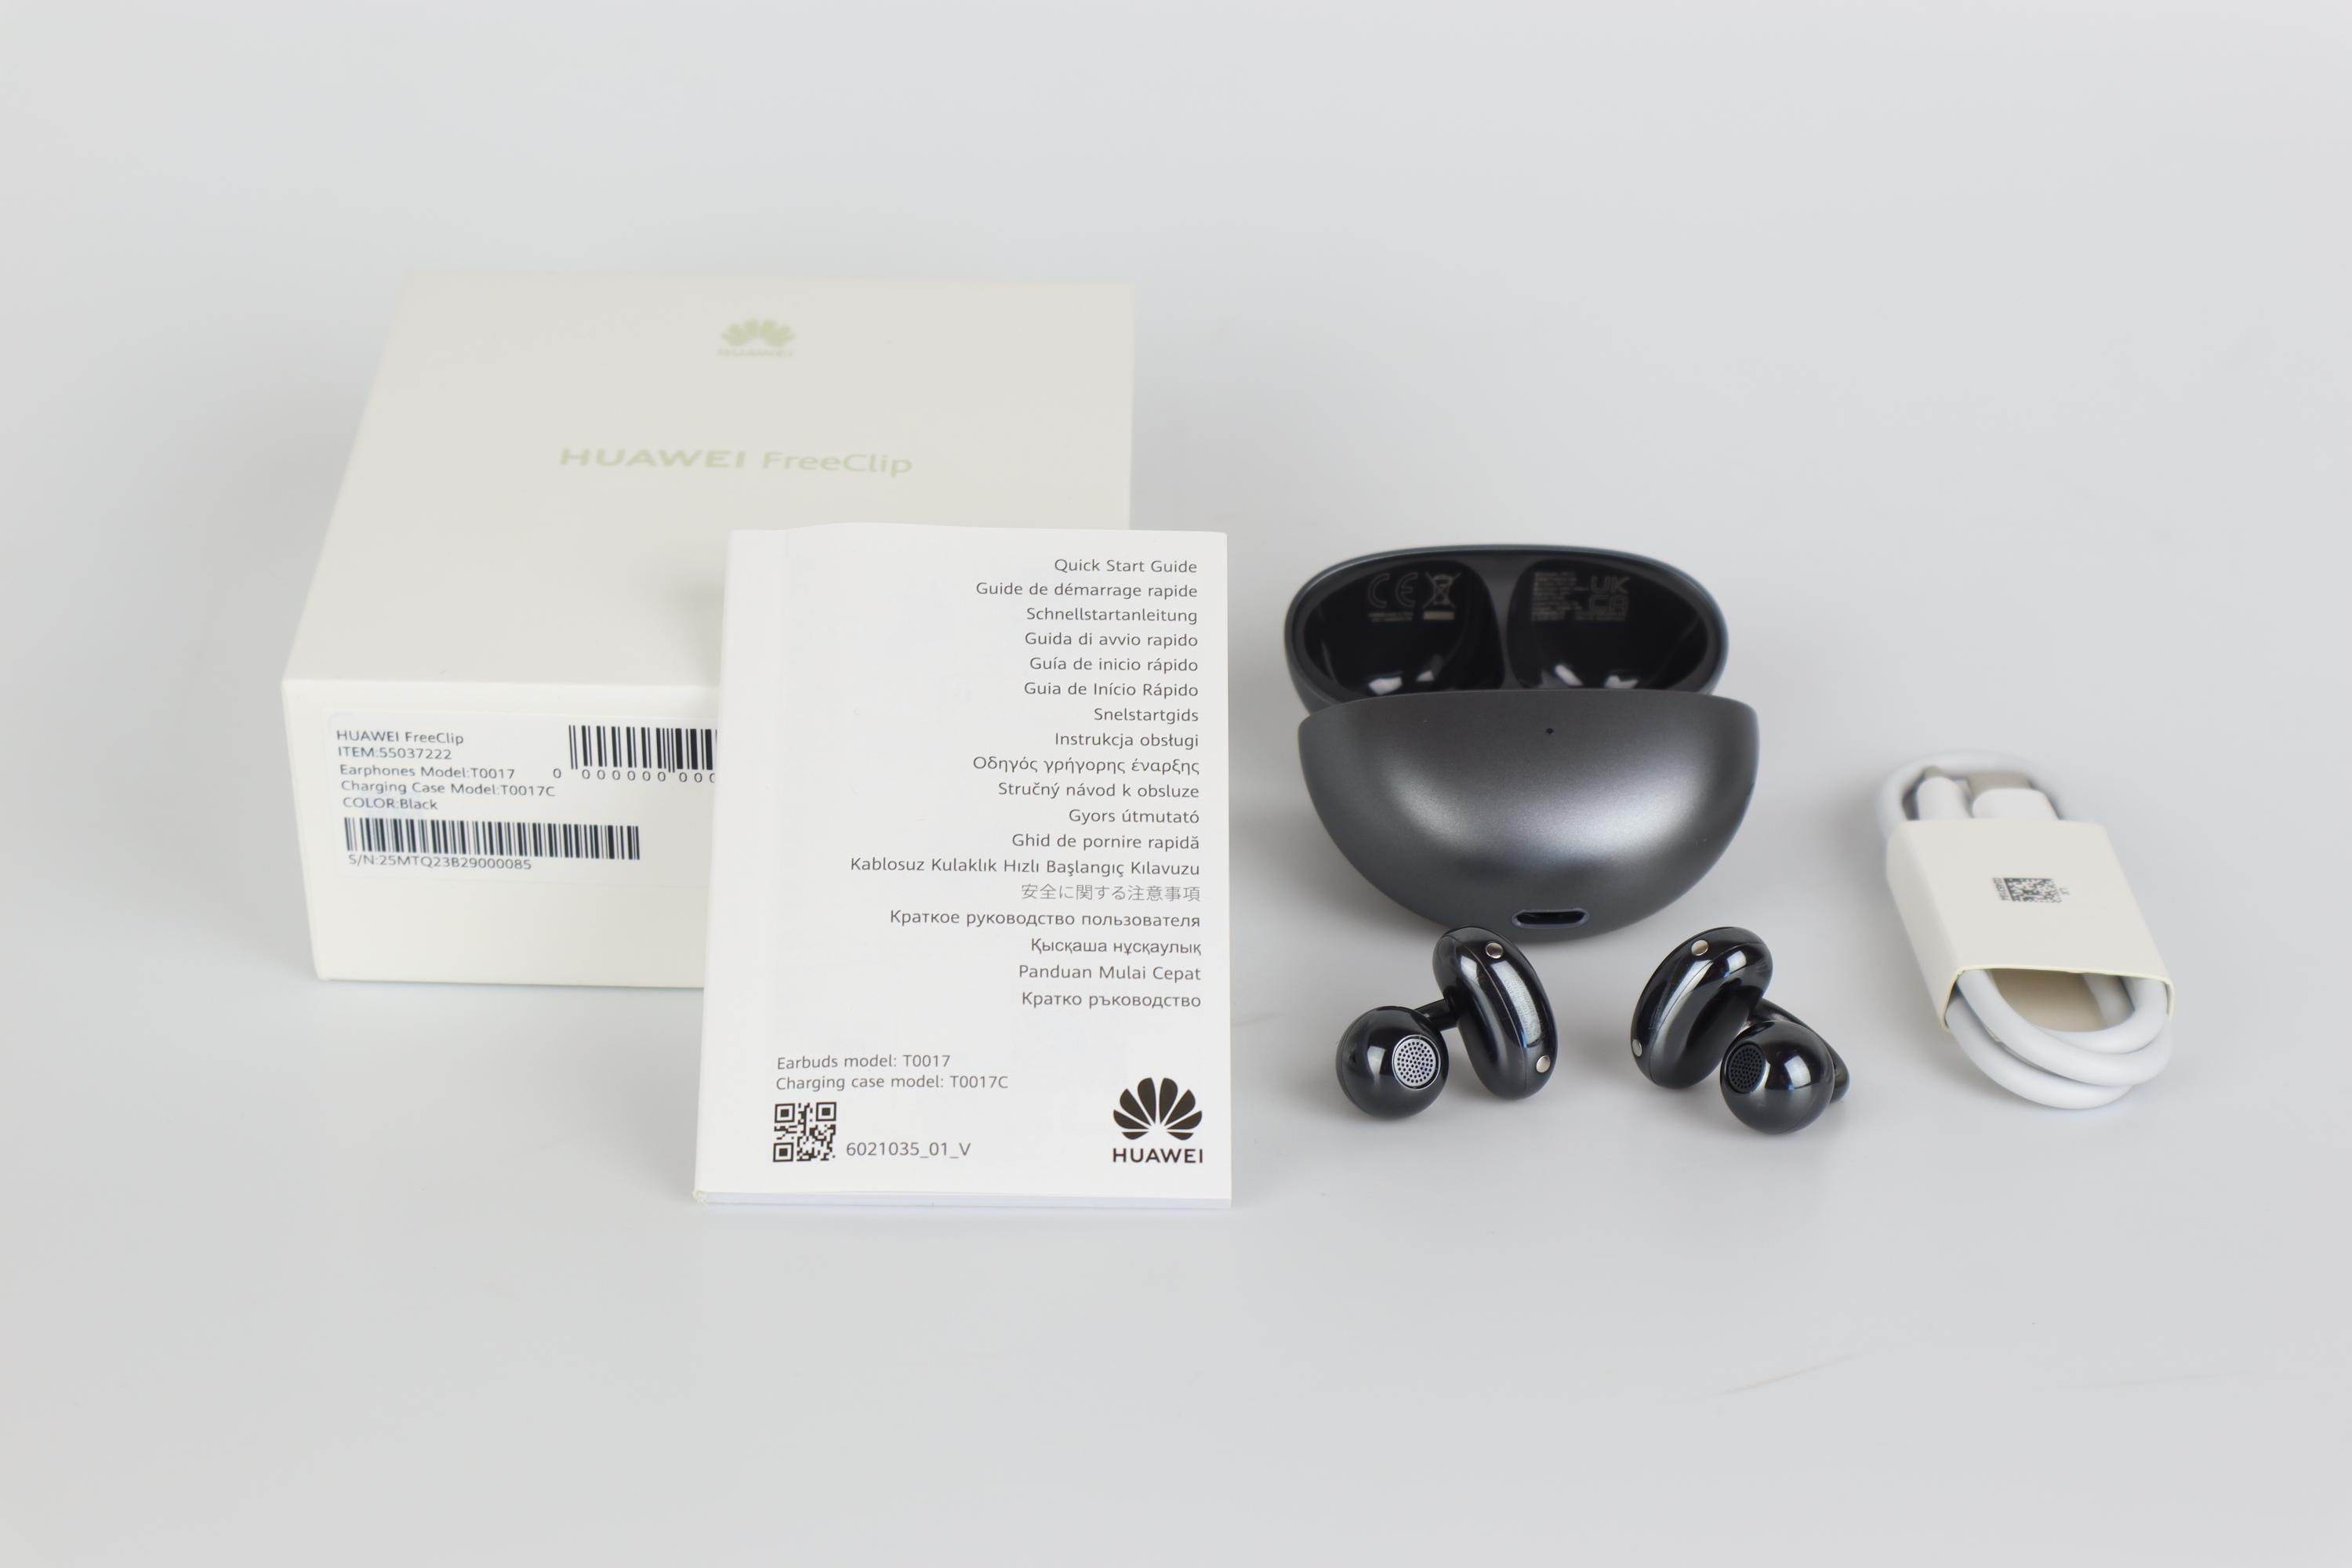 Open-Ear-Hörstöpsel Freeclip: Huawei macht alles anders und geht neue Wege